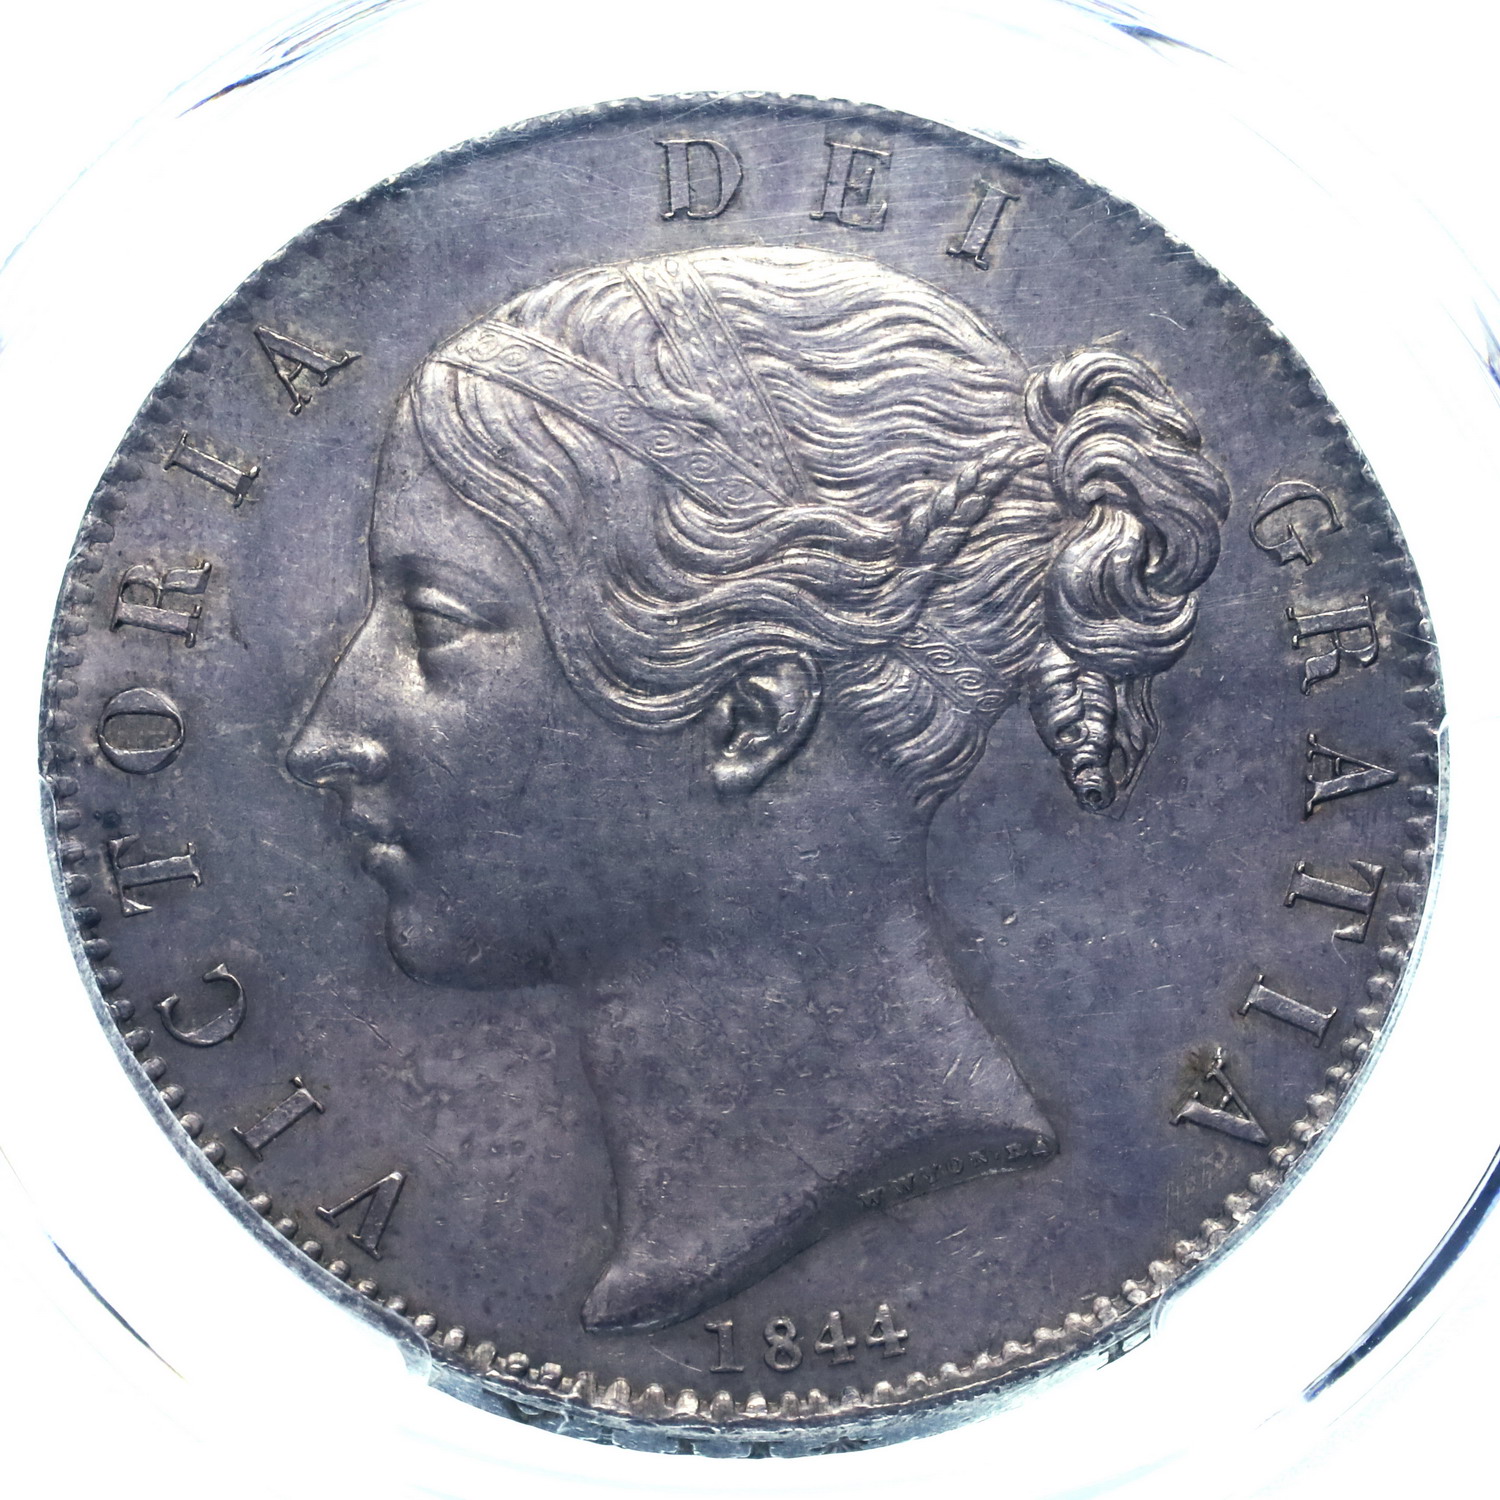 イギリス 1844年 クラウン銀貨 見本パターン貨幣 ヴィクトリア ビクトリア ヤングヘッド ウィリアム・ワイオンデザイン PCGS SP62